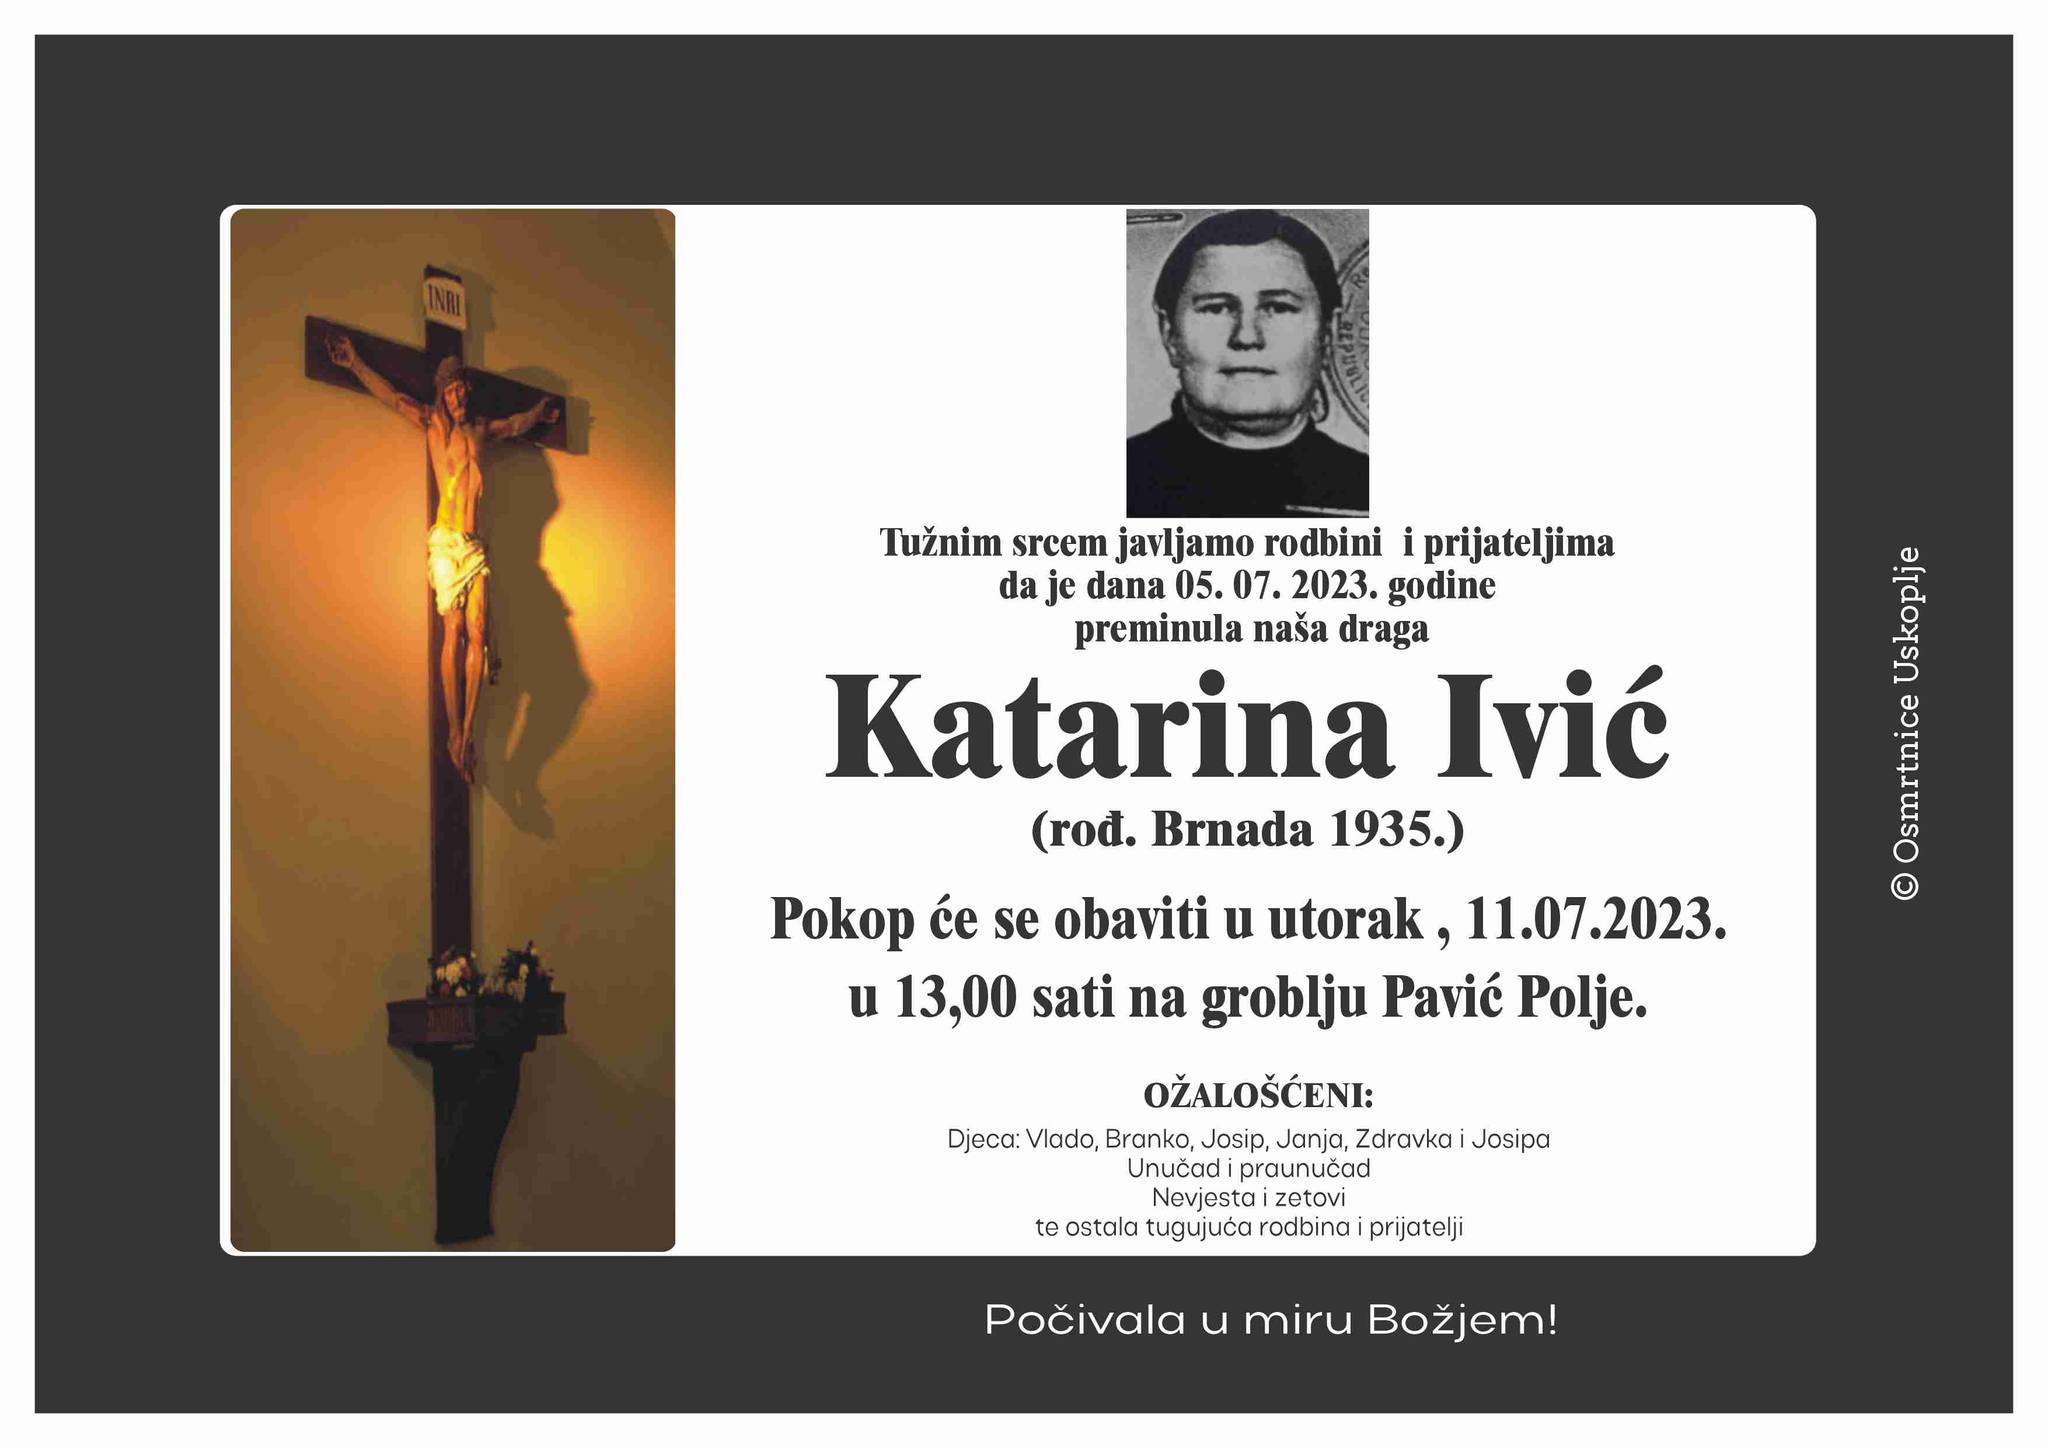 Katarina Ivic